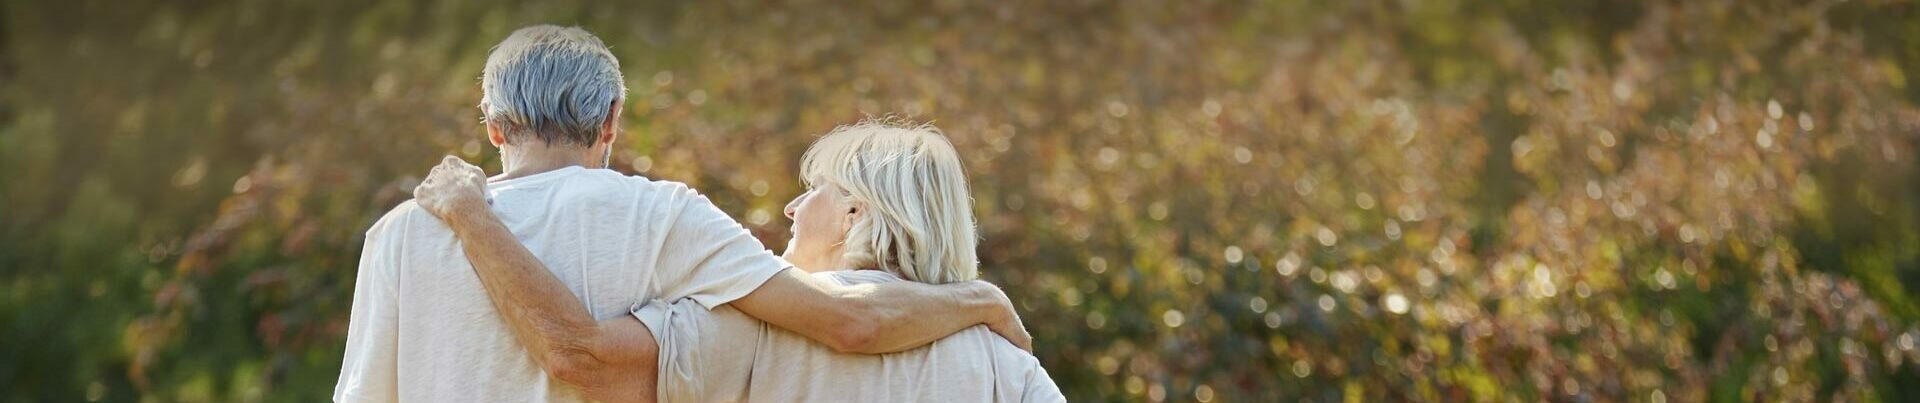 Ein älteres Paar in hellen T-Shirts spaziert Arm in Arm durch einen herbstlichen Garten